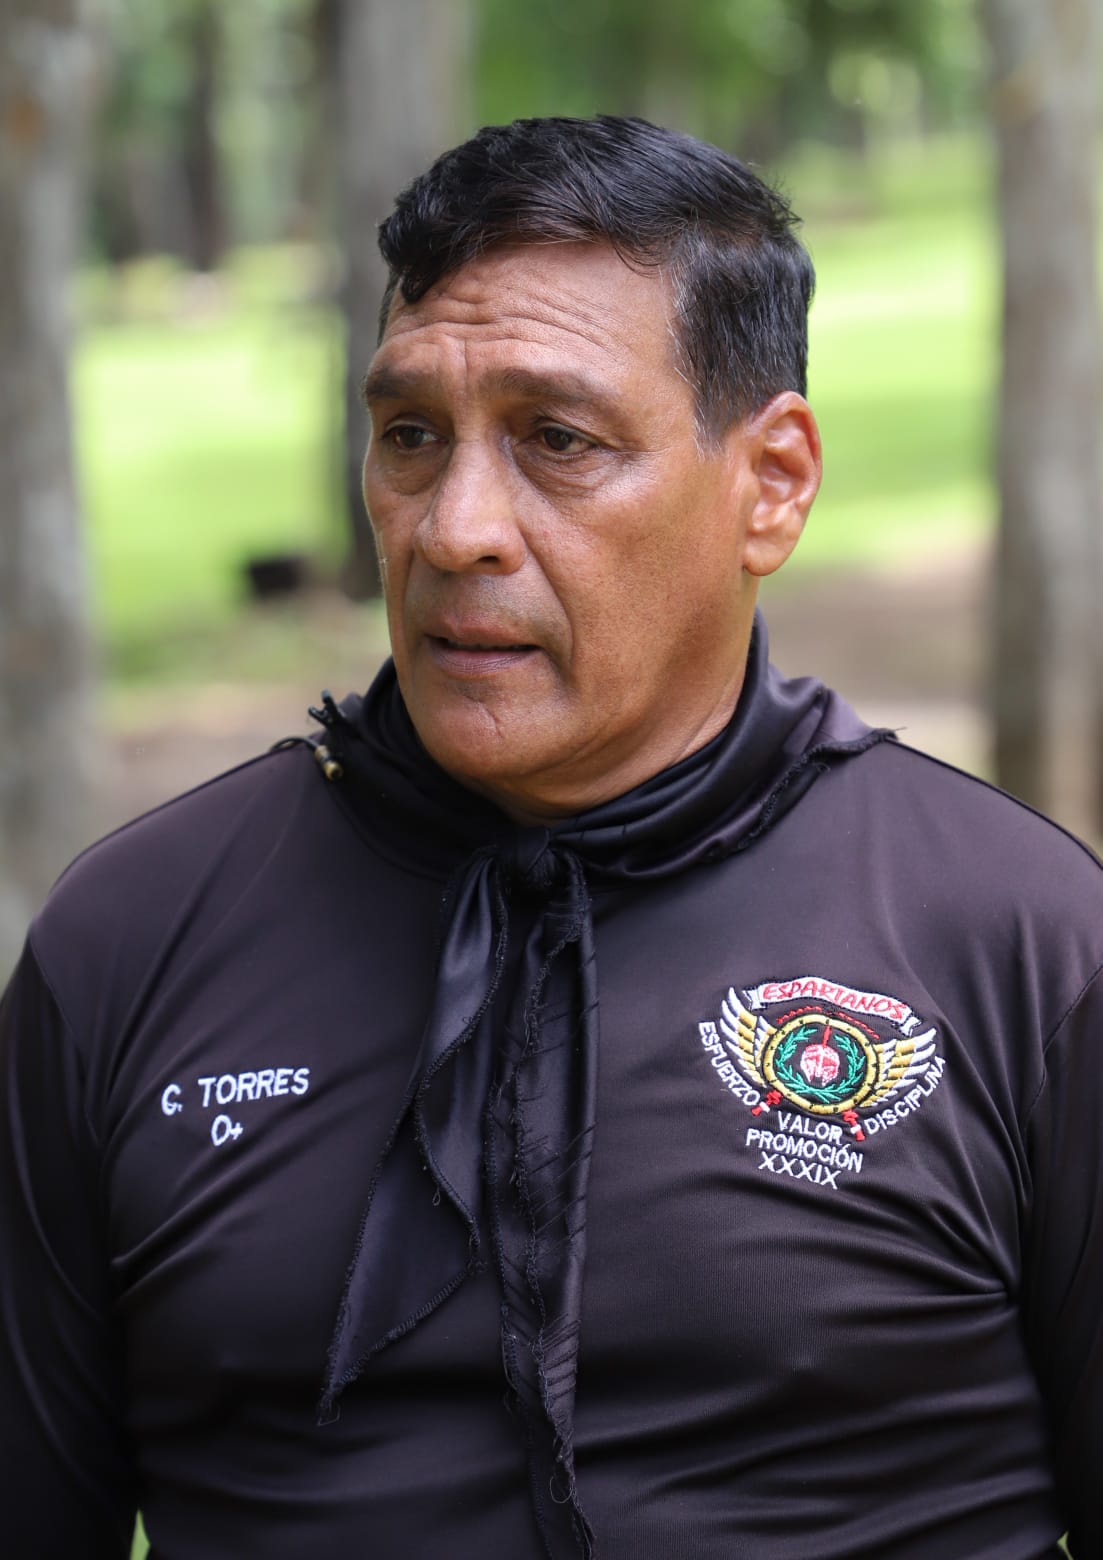 Candelario Torres